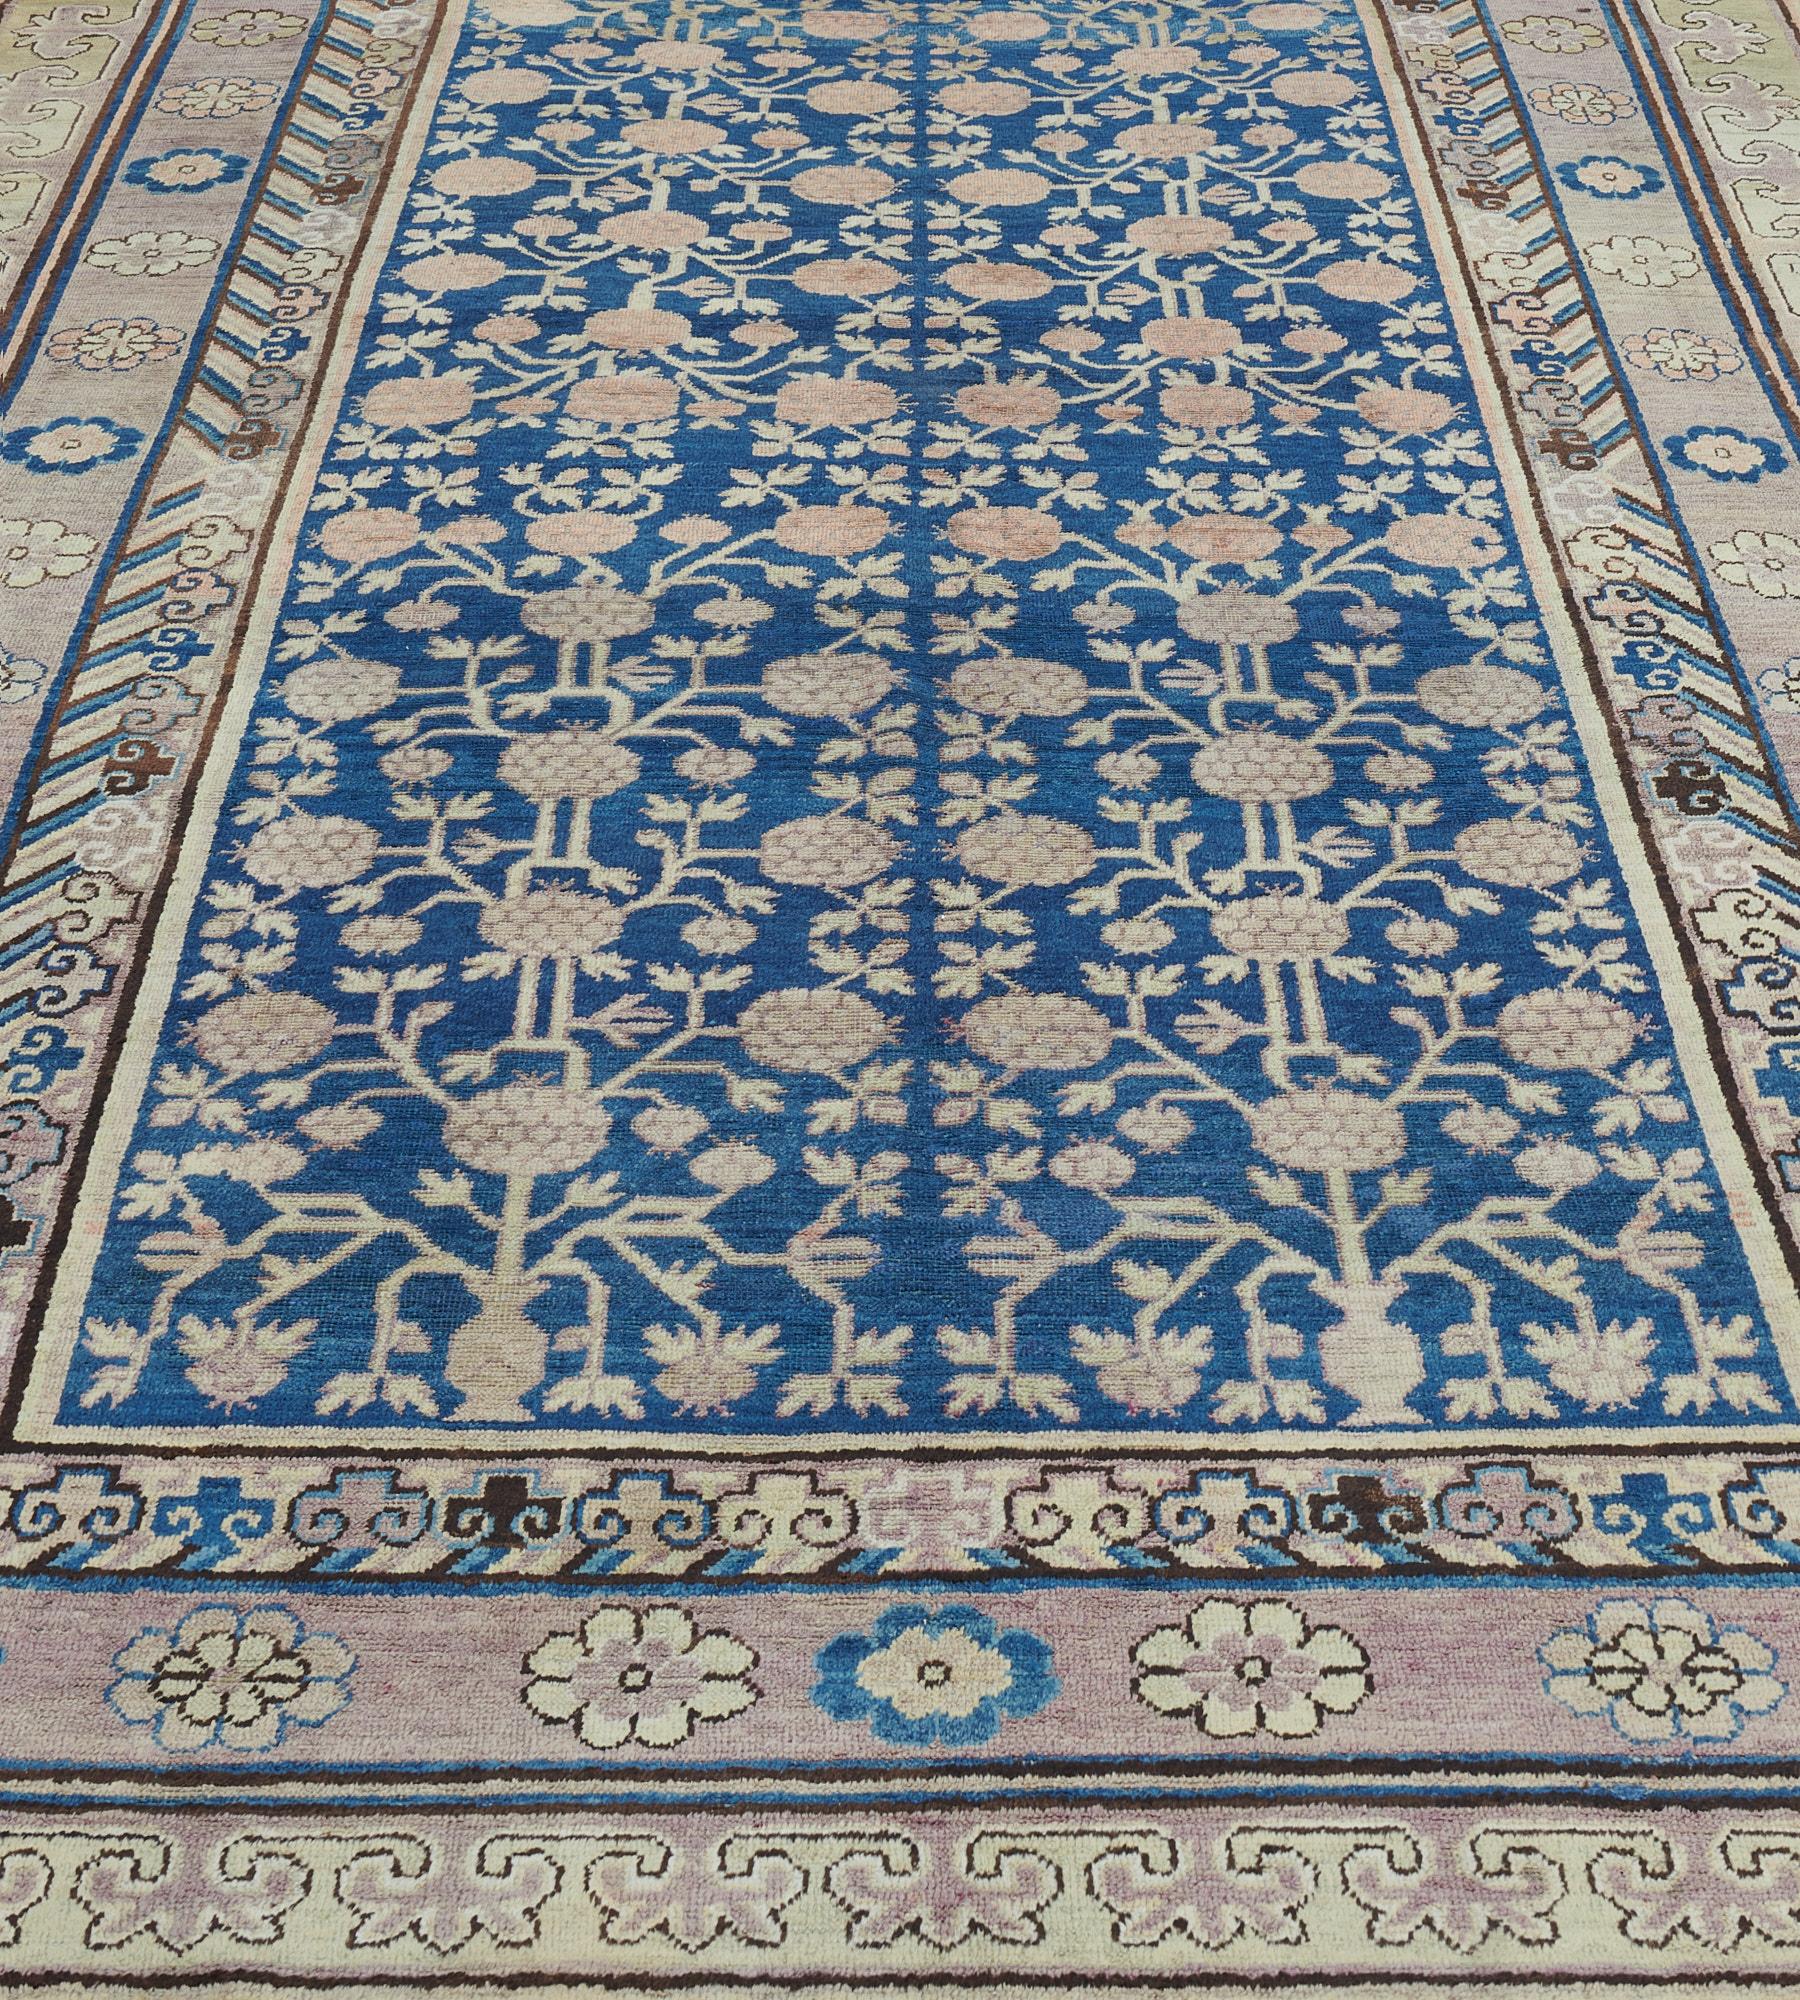 Dieser antike Khotan-Teppich hat ein königsblaues Feld mit einem Granatapfel-Gitter in einer pflaumenfarbenen Rosettenbordüre zwischen beigen Wolkenmotiven und geometrischen Bordüren, flankiert von tabak- und marineblauen Streifen.